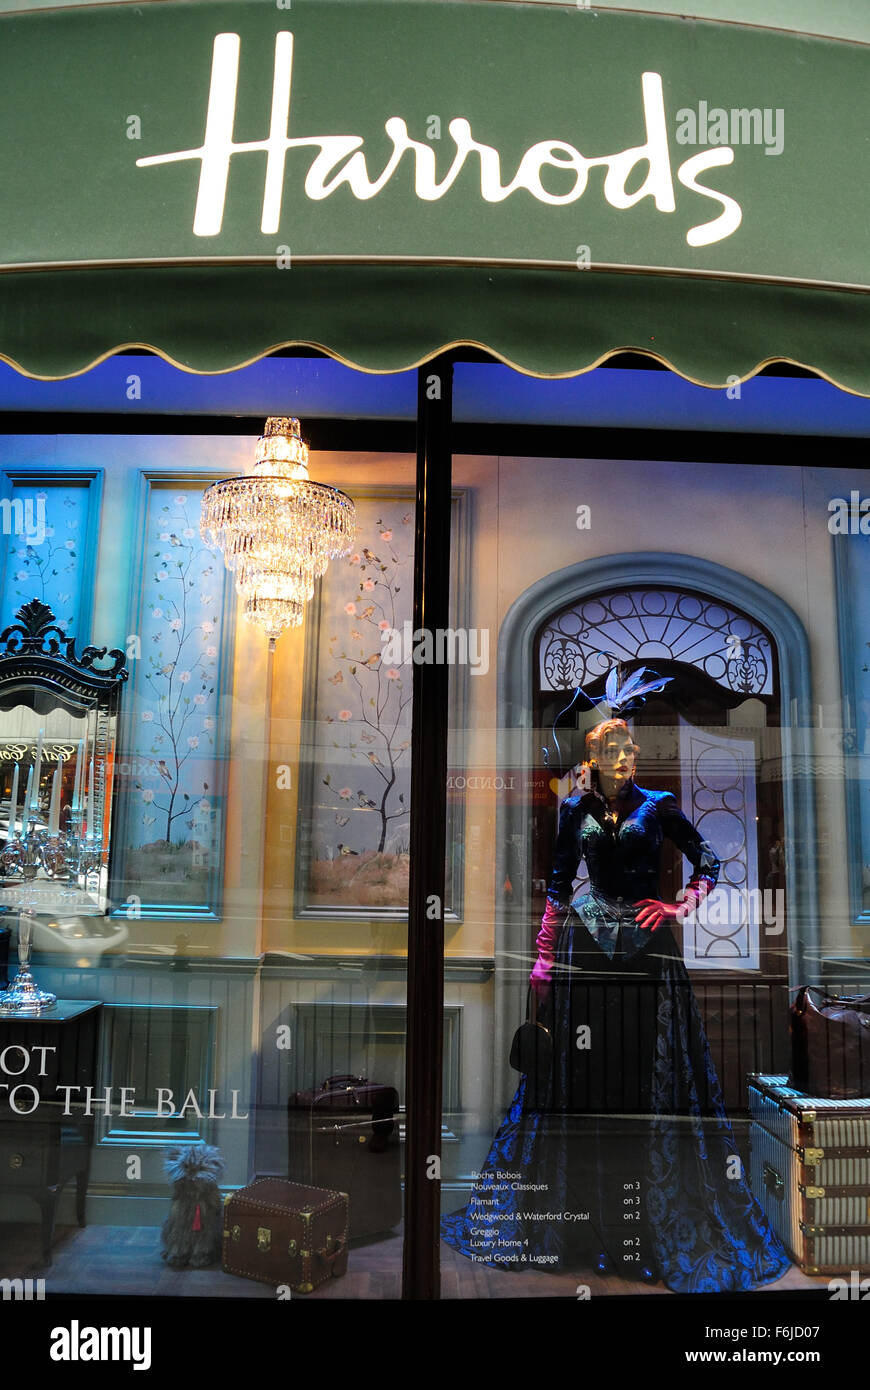 El desgaste de mujeres aparece en la ventana de la tienda Harrods, Knightsbridge, Londres, Reino Unido - la noche, 2015 Foto de stock